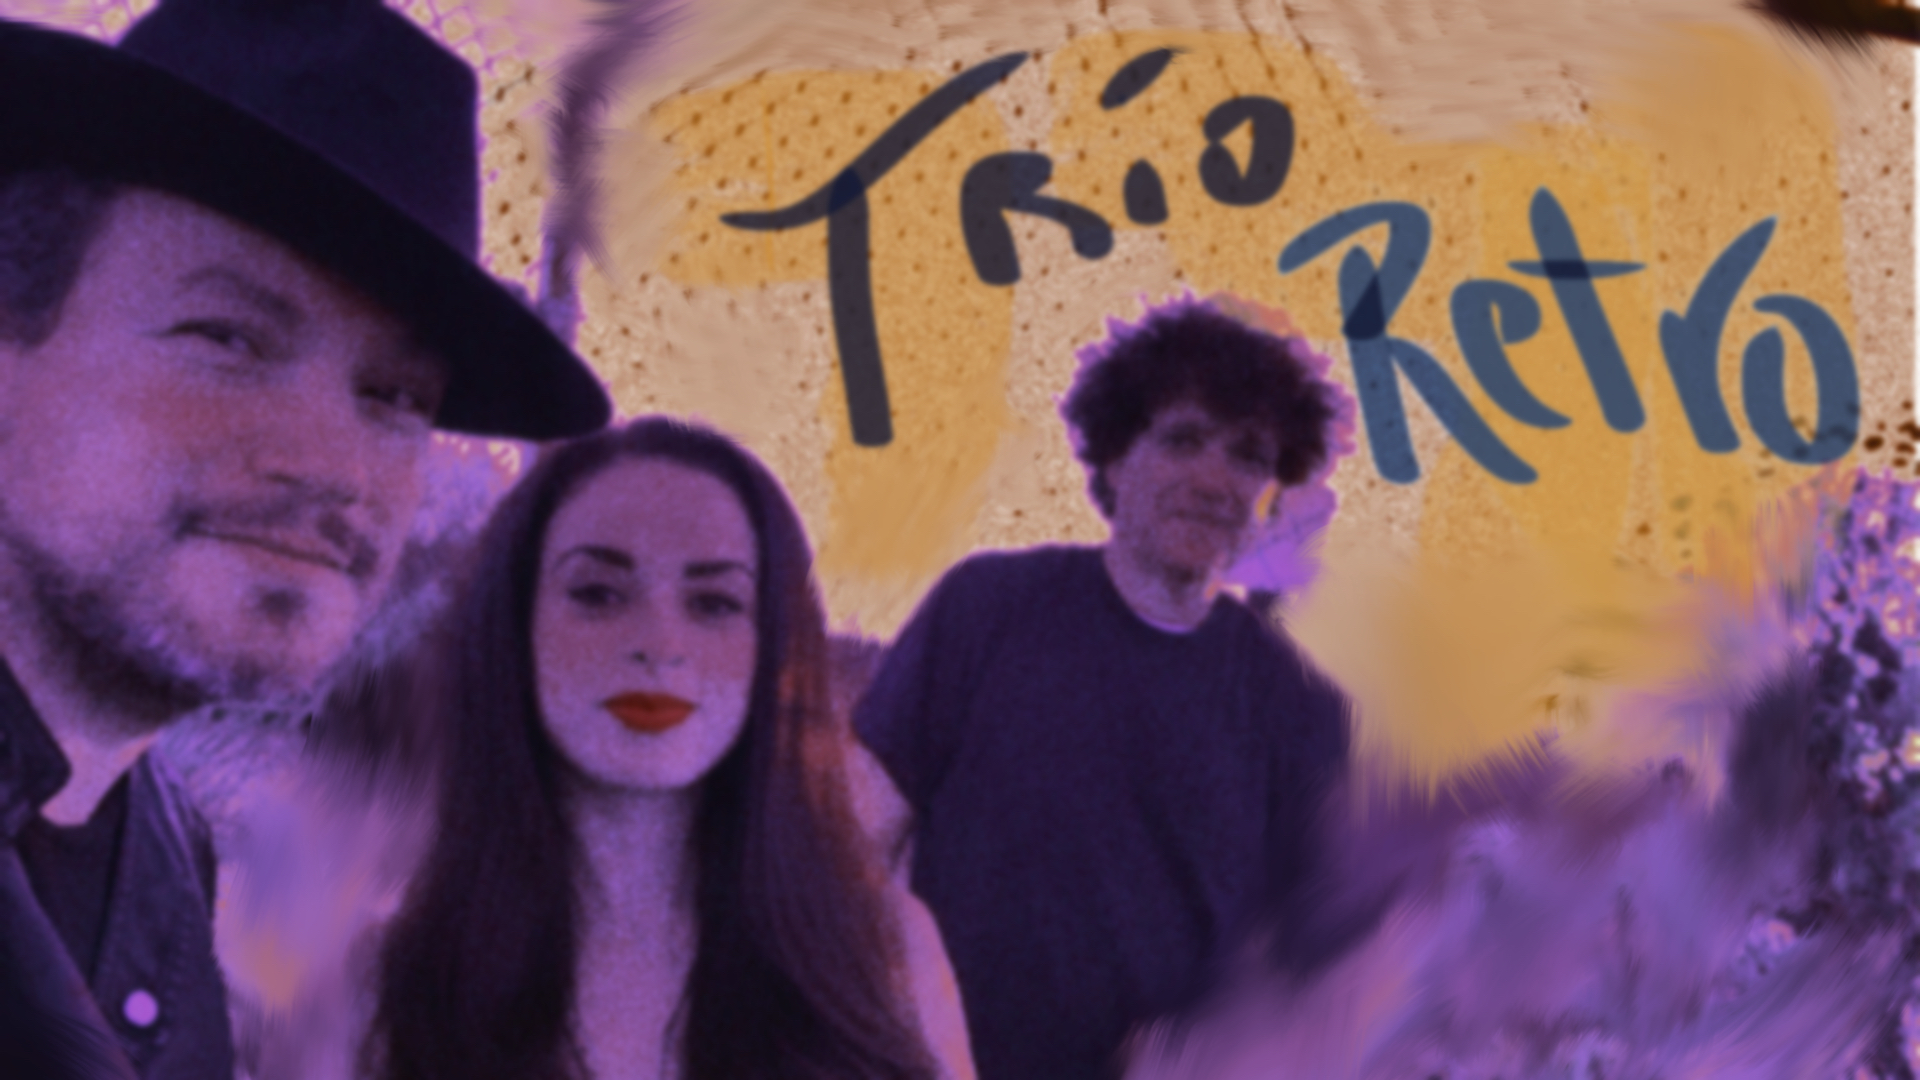 Asdru Sierra (vocals, trumpet), Cindy Gomez (vocals) and Anthony Marinelli (piano, celeste) - International Jazz vocal group - Trio Retro (2015)